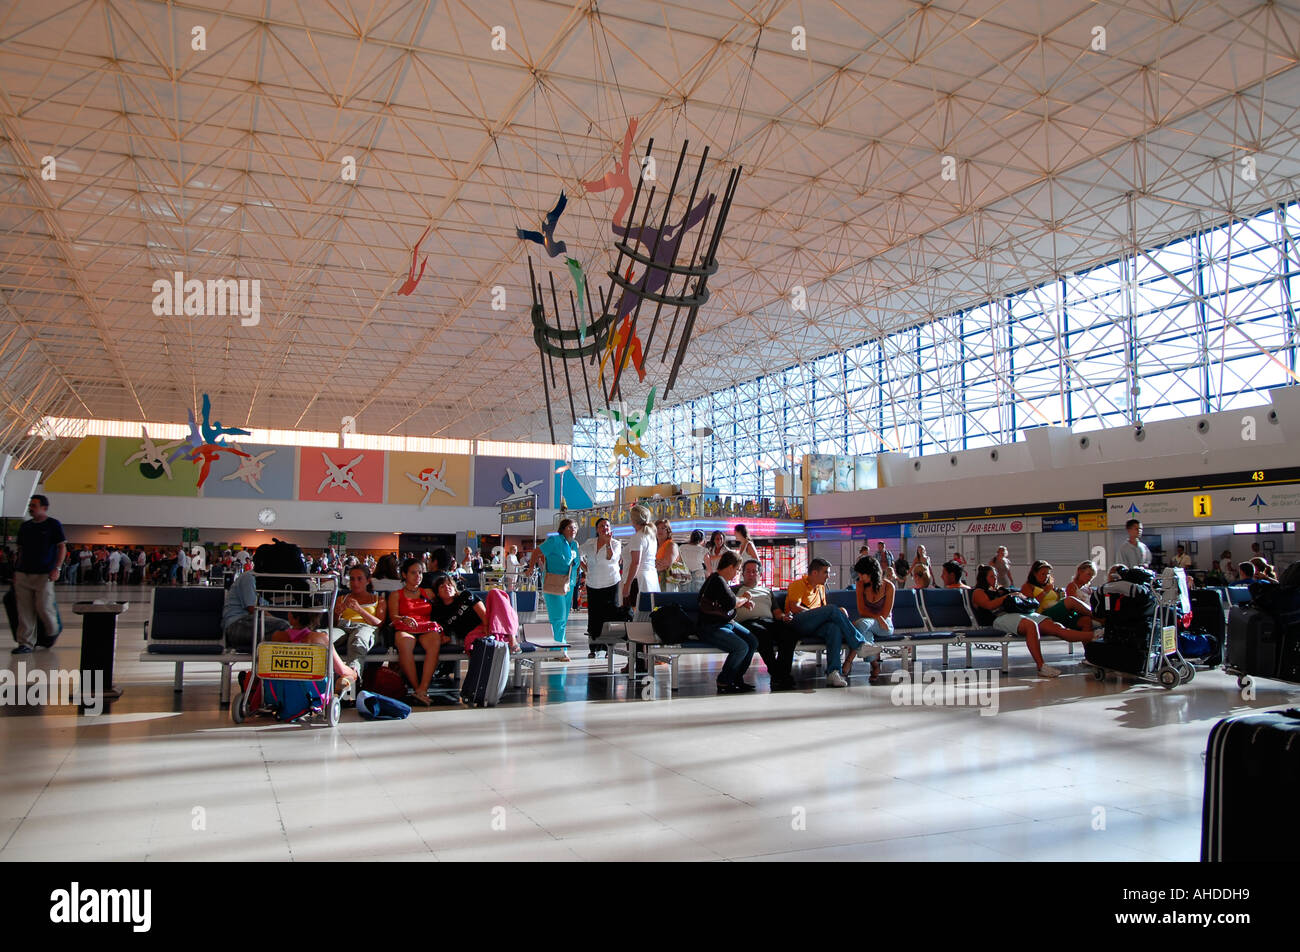 Catastrófico Insatisfecho mantener Canary Islands Las Palmas, Gran Canaria, airport, Spain Stock Photo - Alamy